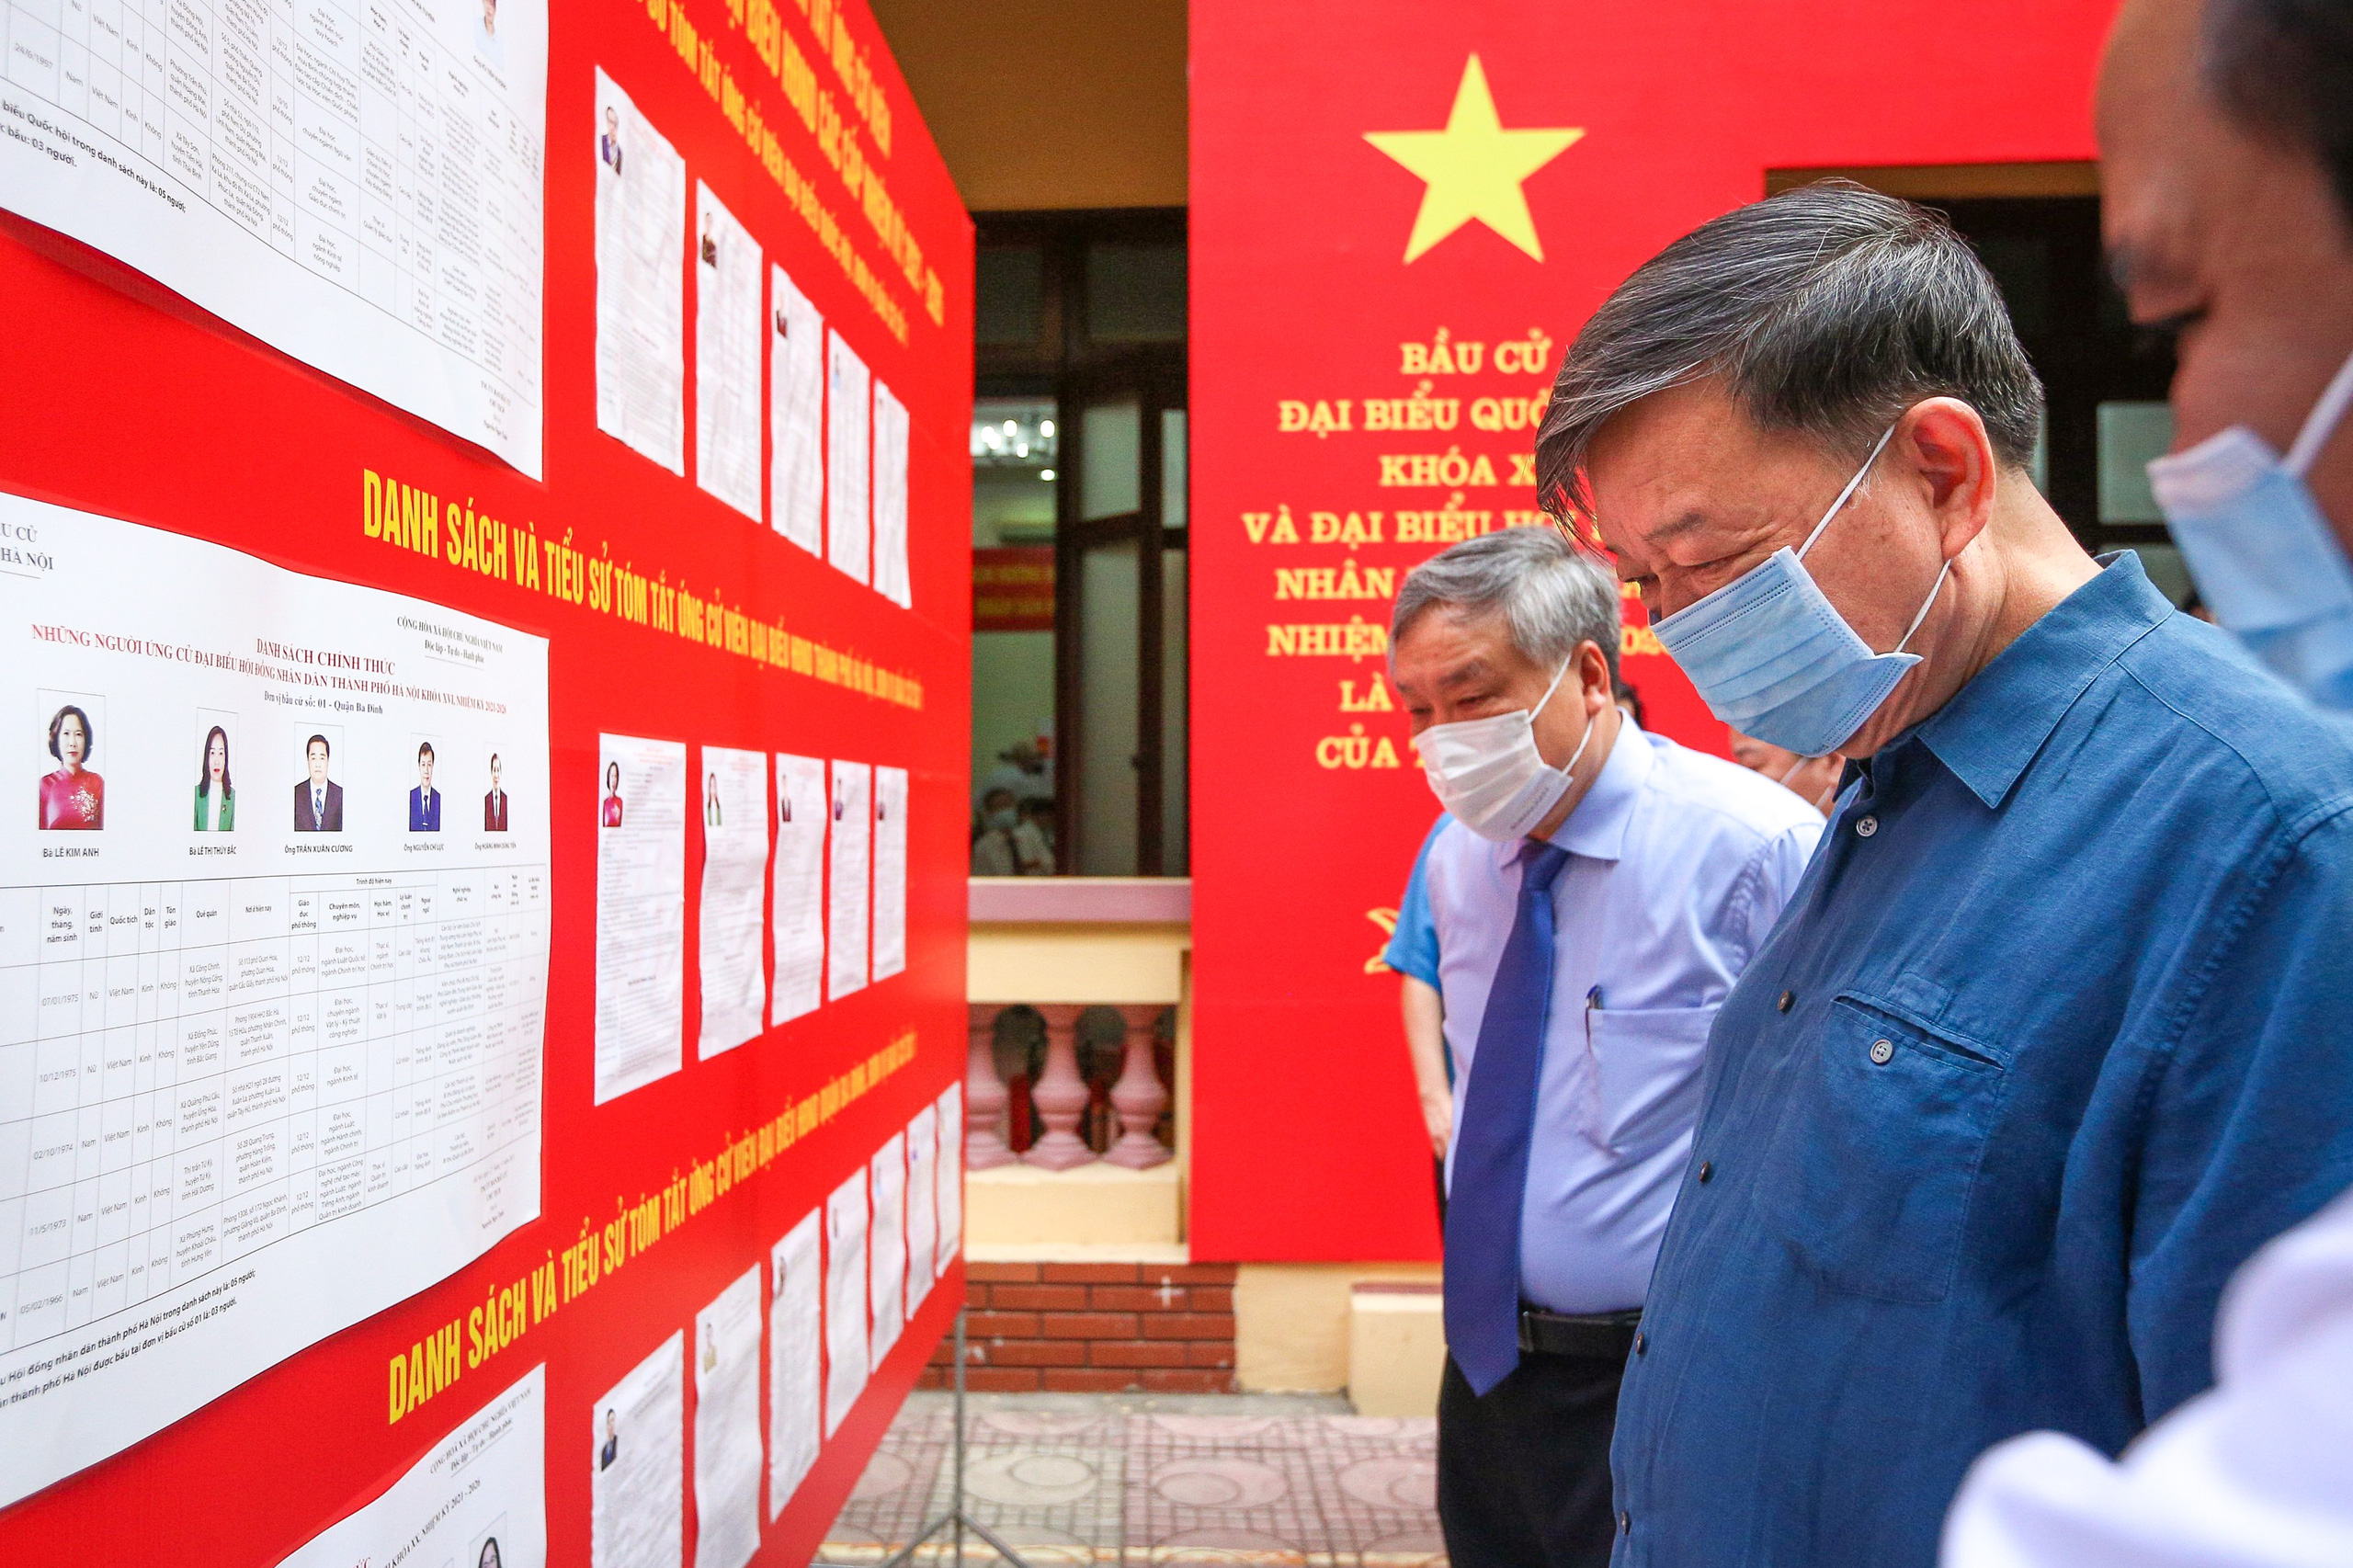 Hình ảnh Đại tướng Tô Lâm bỏ phiếu bầu cử tại quận Ba Đình, Hà Nội - Ảnh 3.